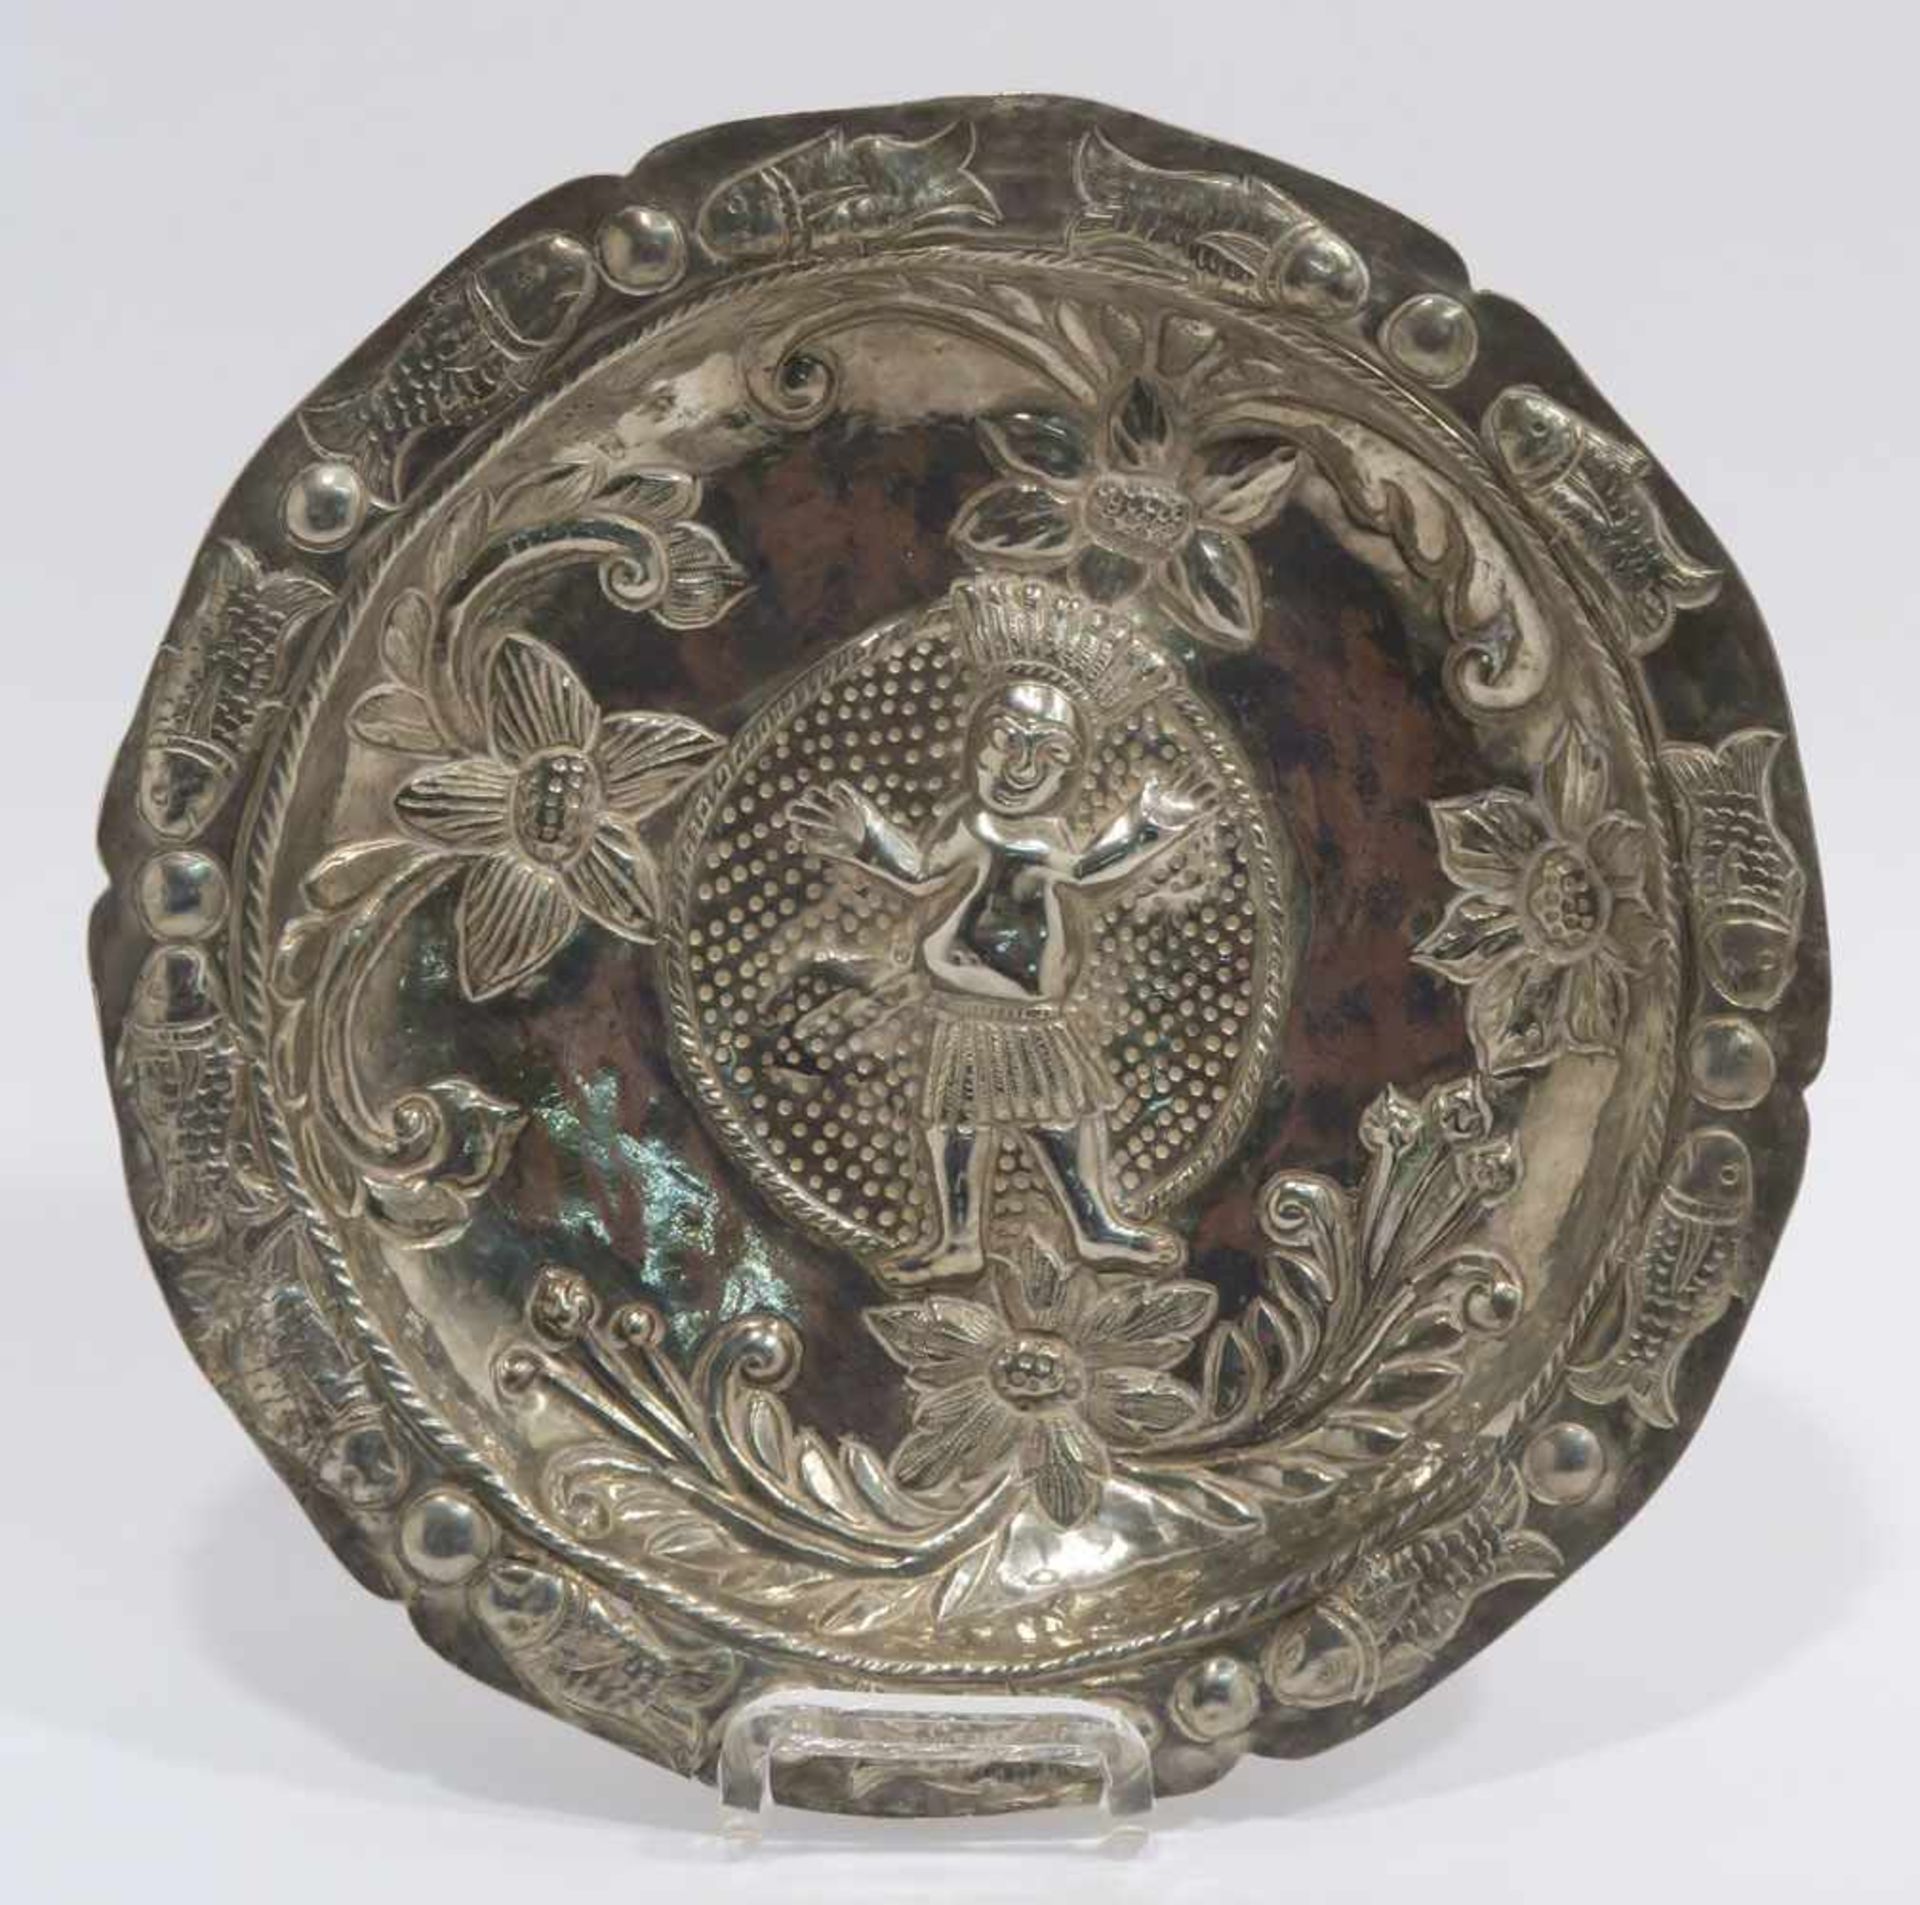 TellerWohl Südamerika. Silber. Reliefdekor: indigener Mann, Blumen, Fische. Ø 21 cm. 260 g.